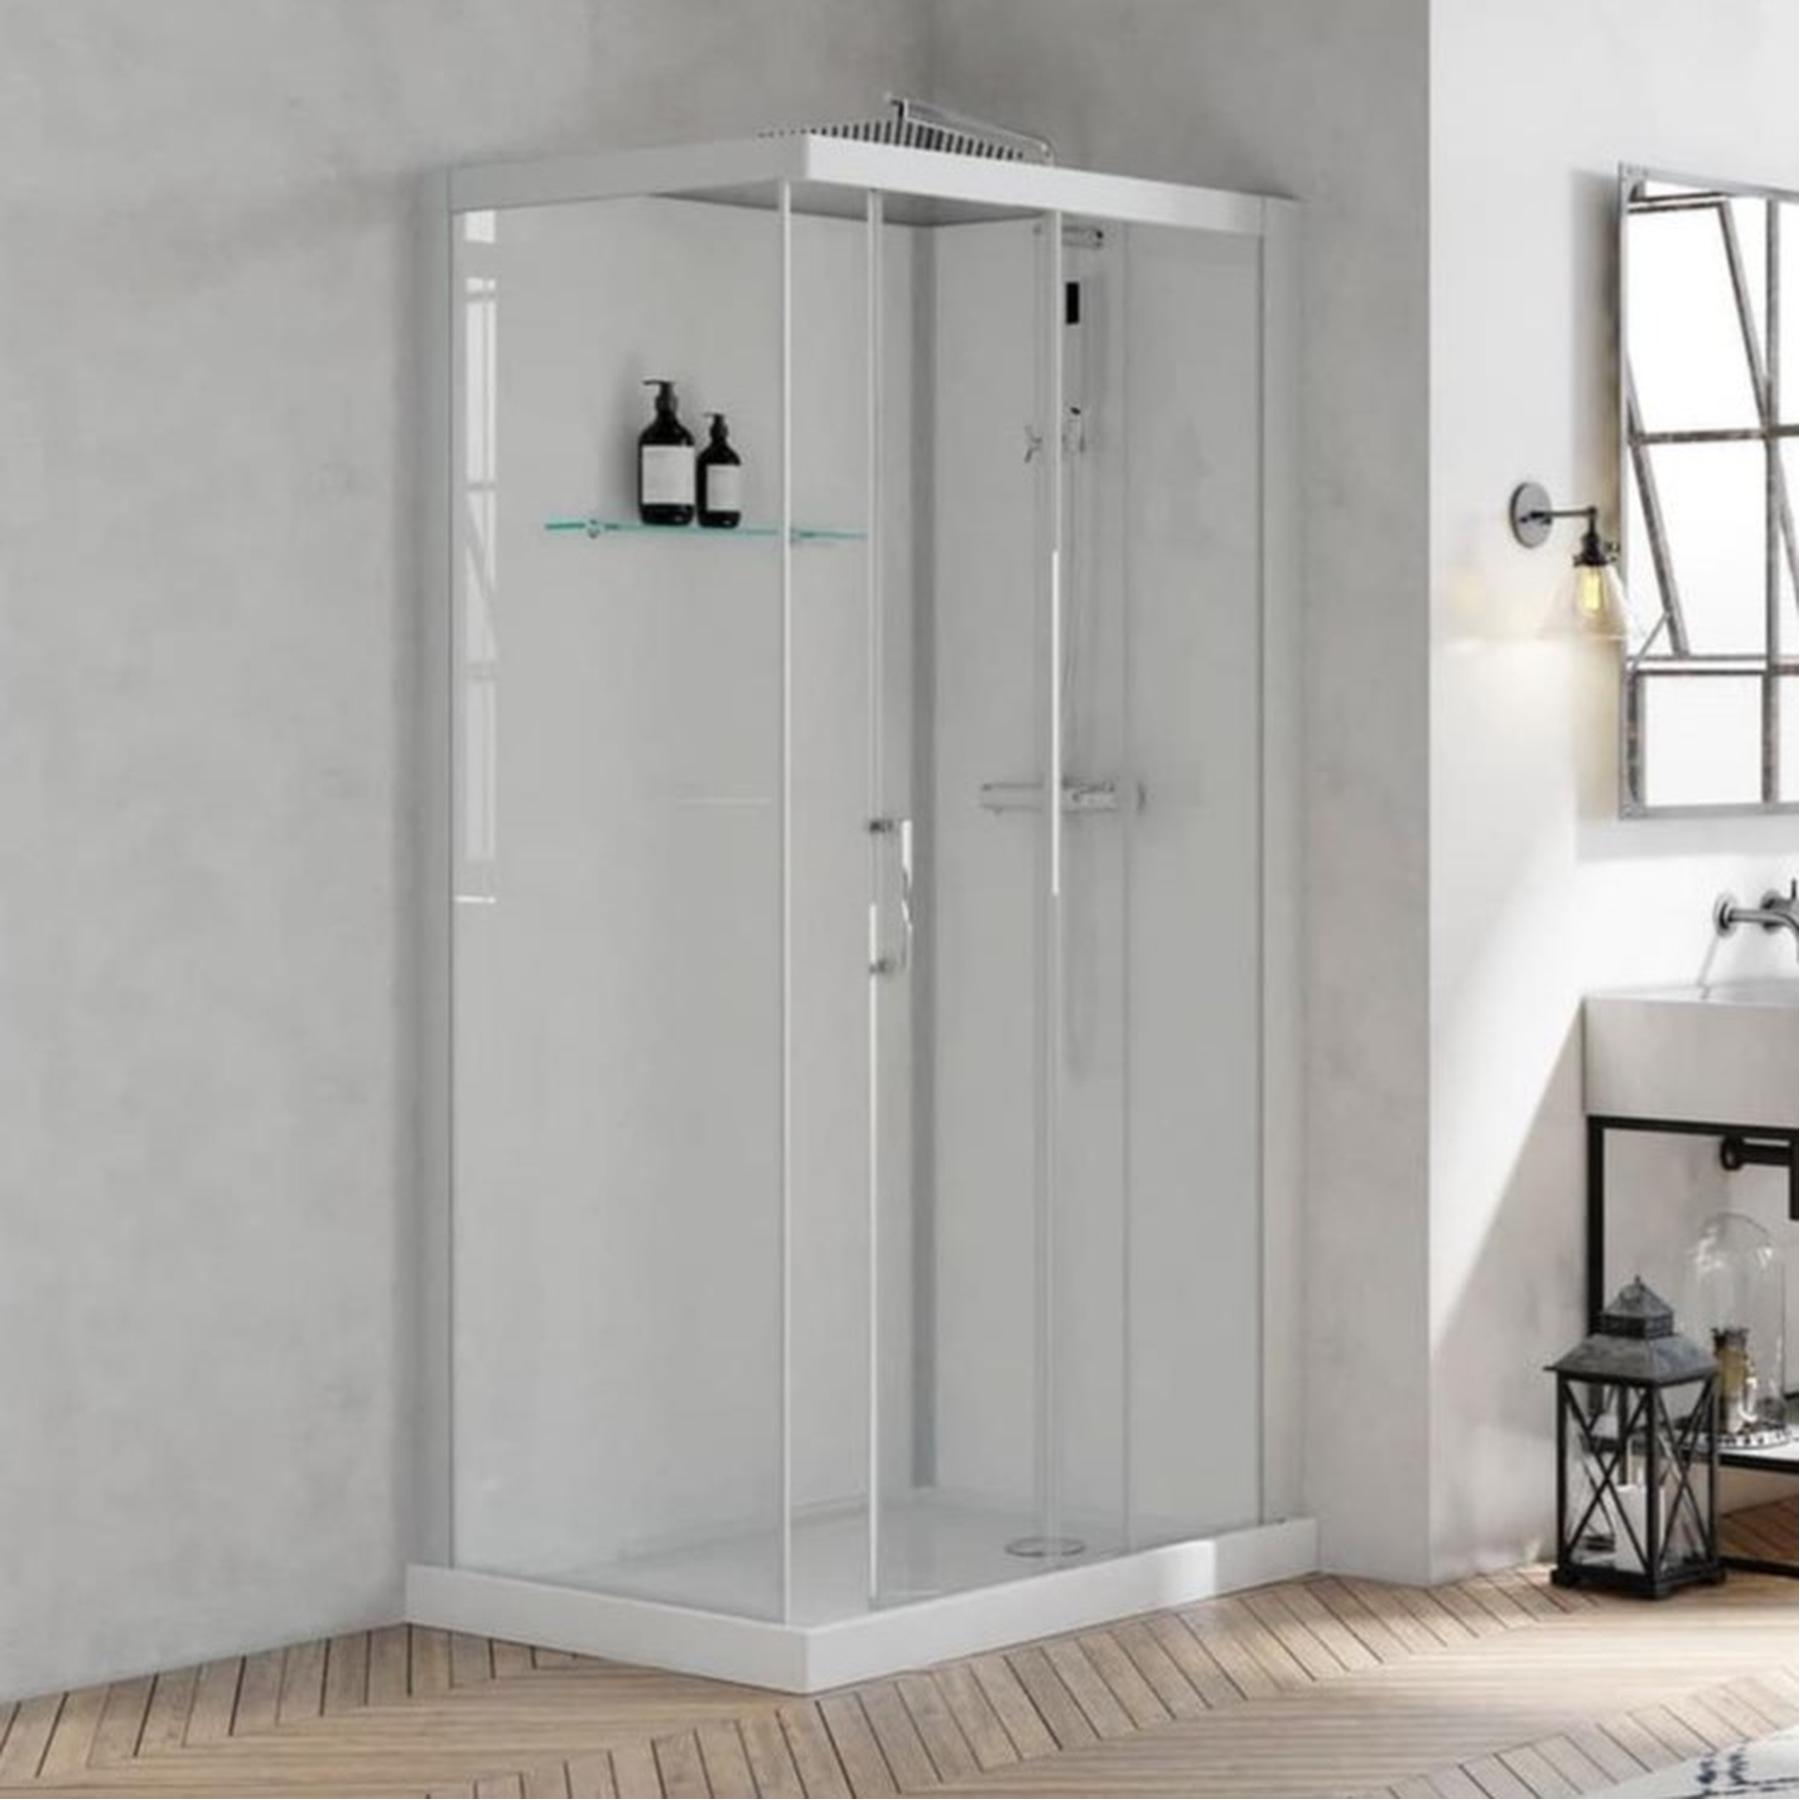 Cabine de douche BROOKLYN profilés gris clair porte coulissante 110x80 8.5 cm verre transparent mitigeur thermostatique fond en verre blanc